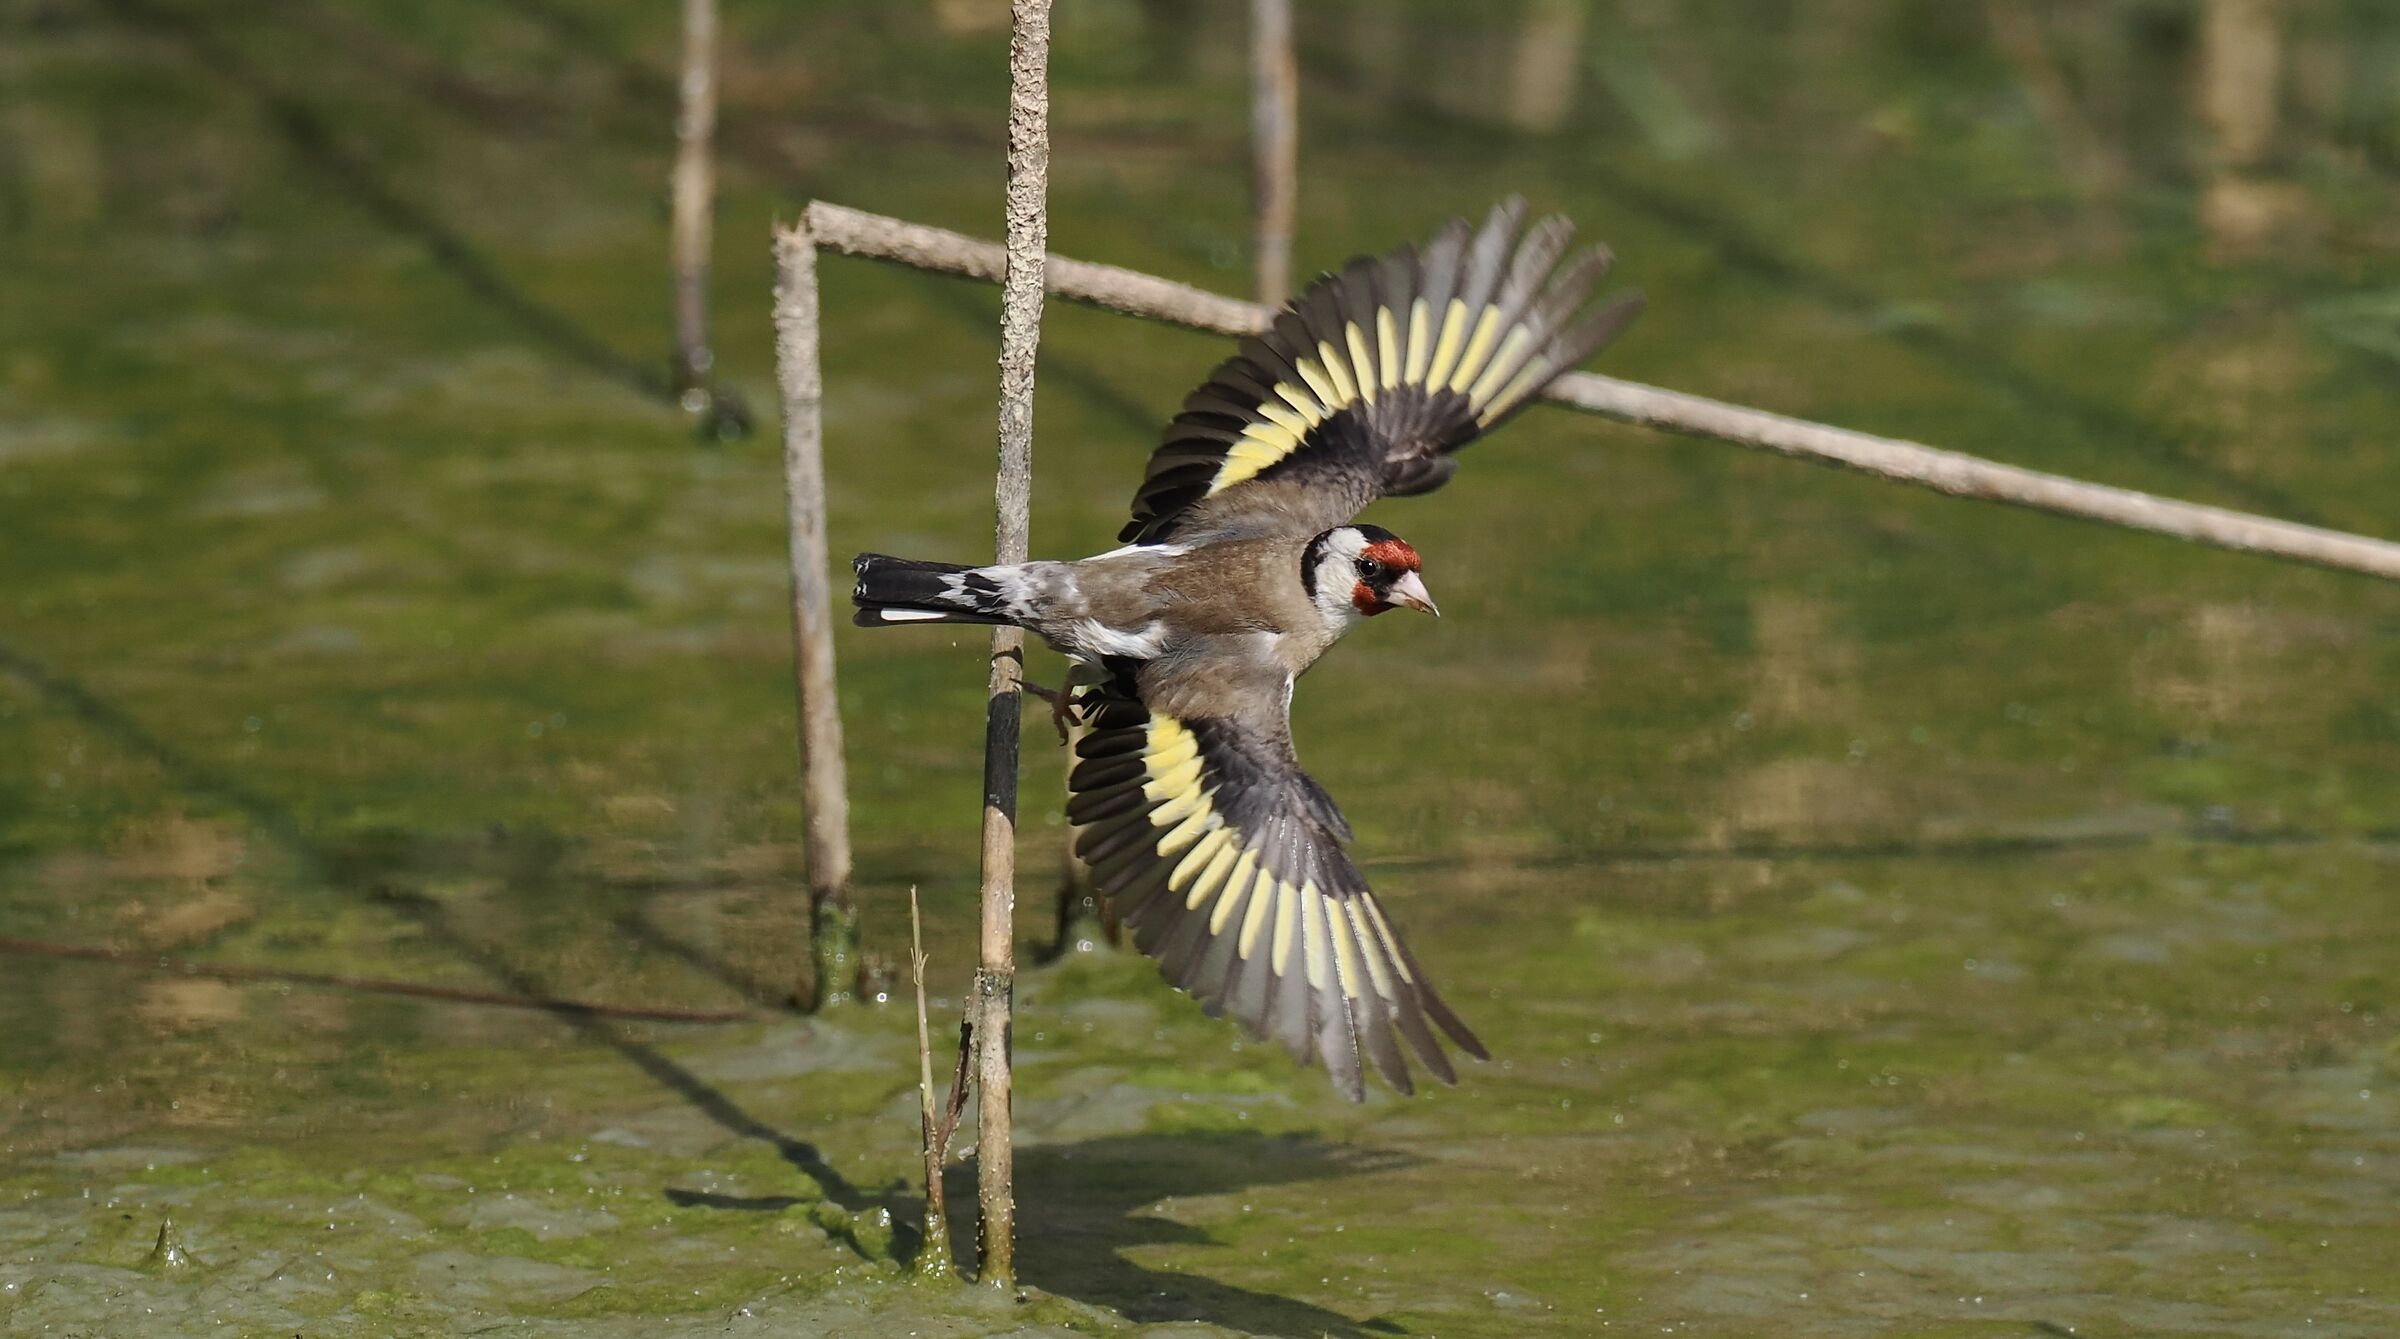 Goldfinch in flight...